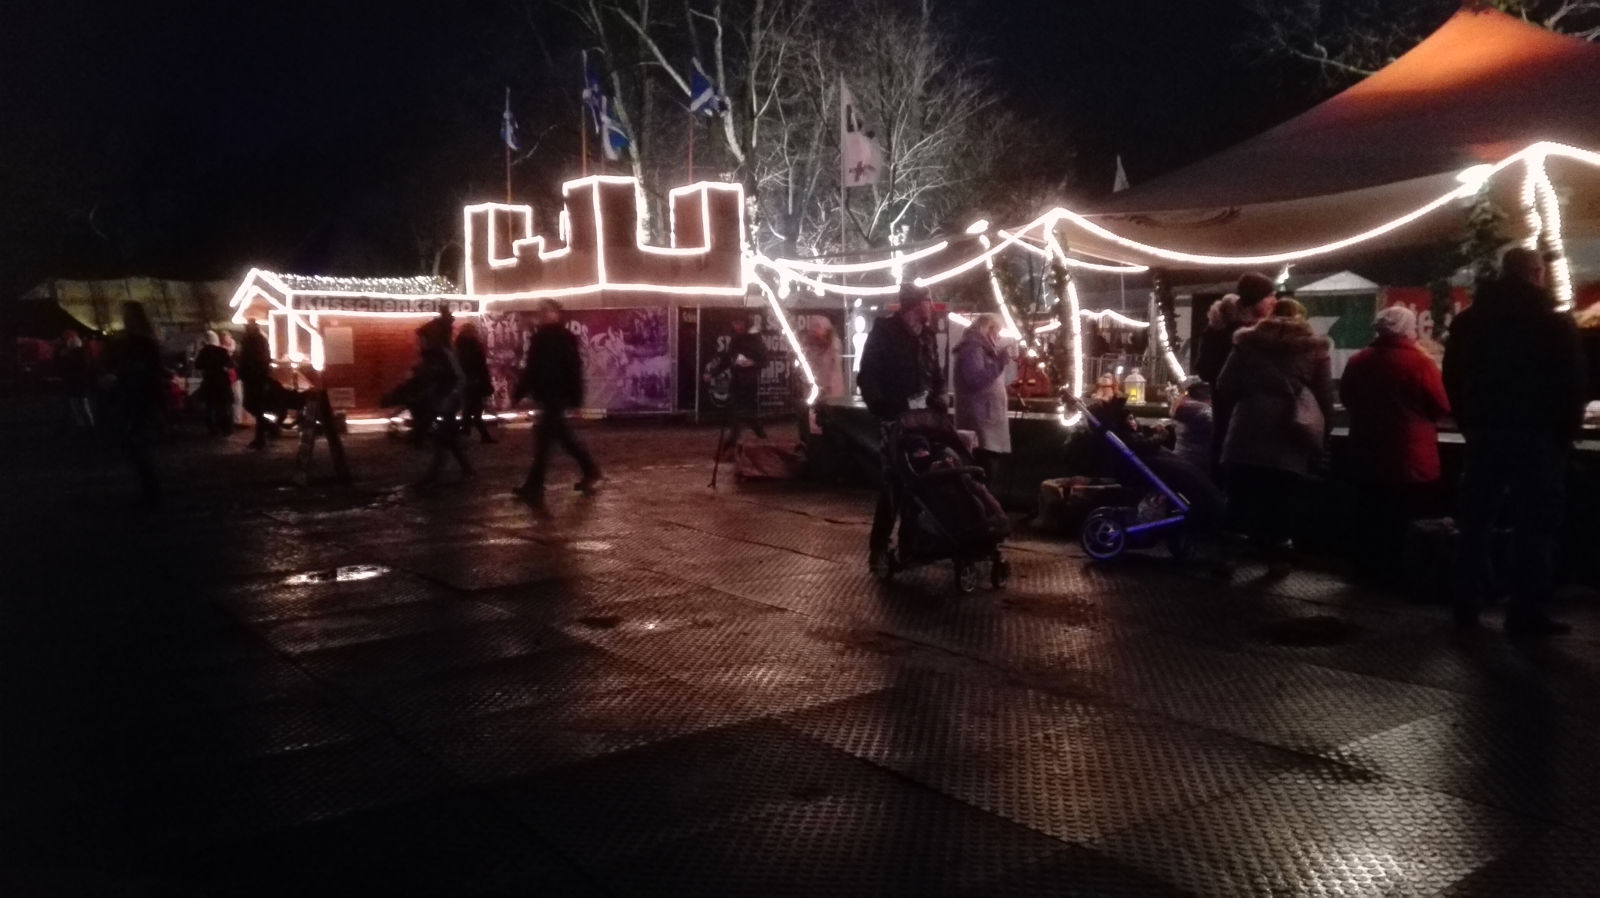 Phantastischer Mittelalterlicher Lichter Weihnachtsmarkt